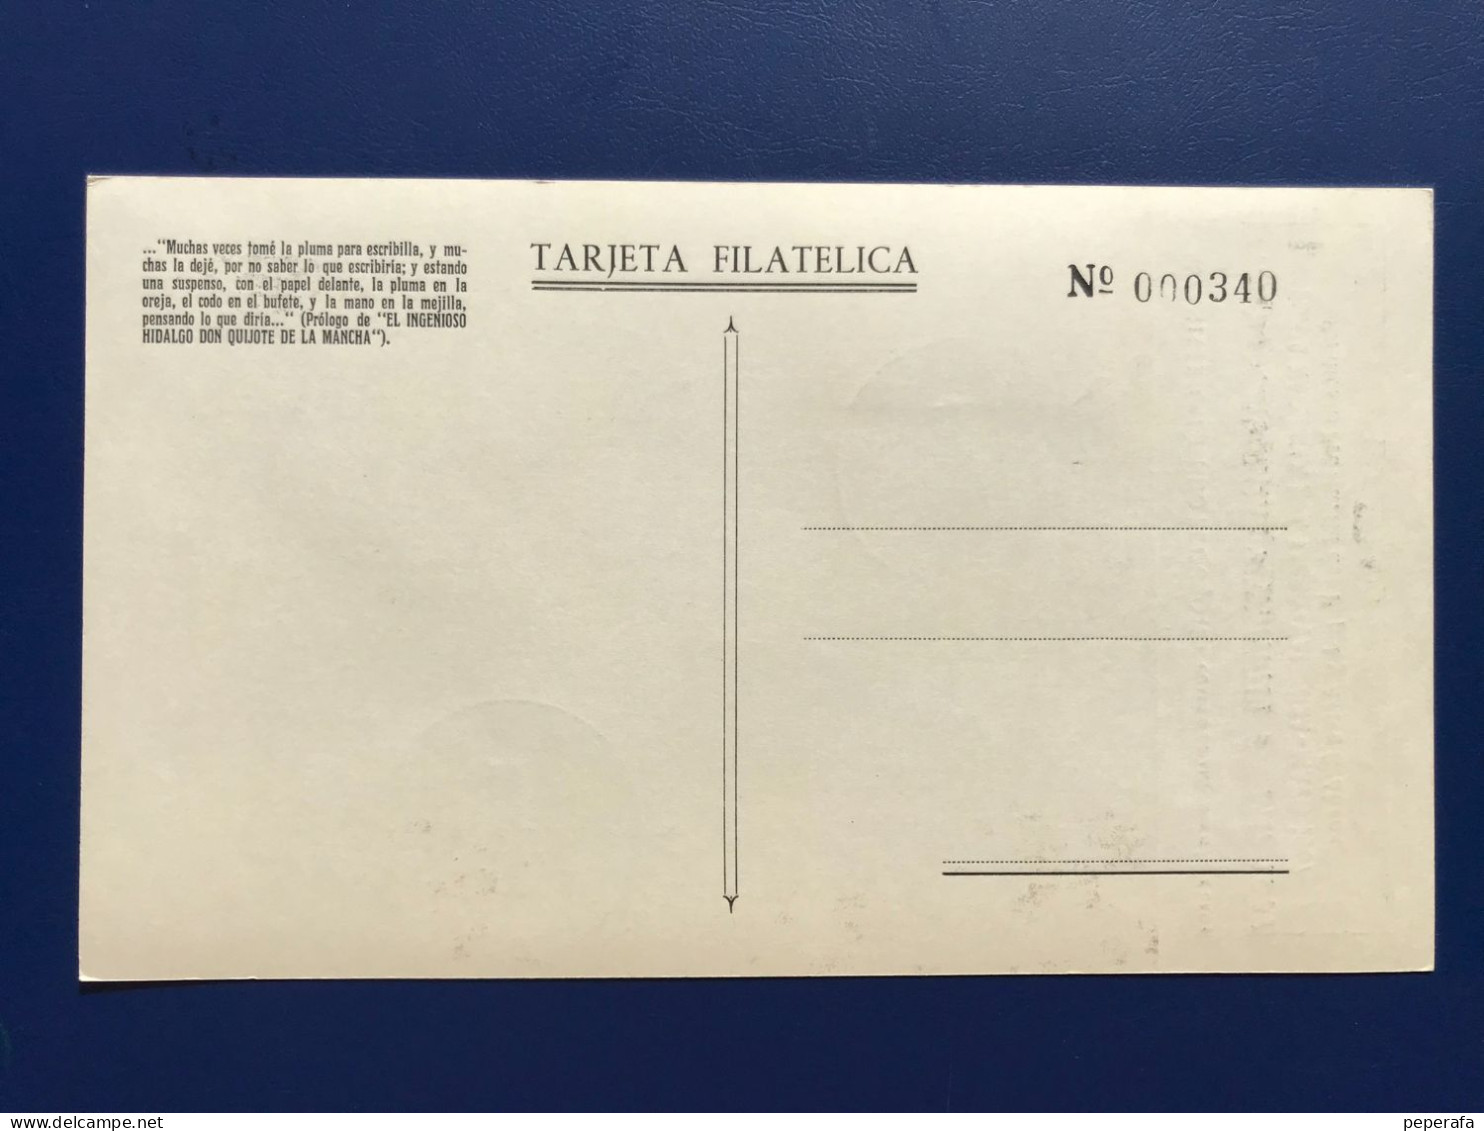 Spain España 1968, CERVANTES ESCRIBIENDO EL QUIJOTE, TARJETA FERIA NACIONAL DEL LIBRO VALENCIA - Unused Stamps